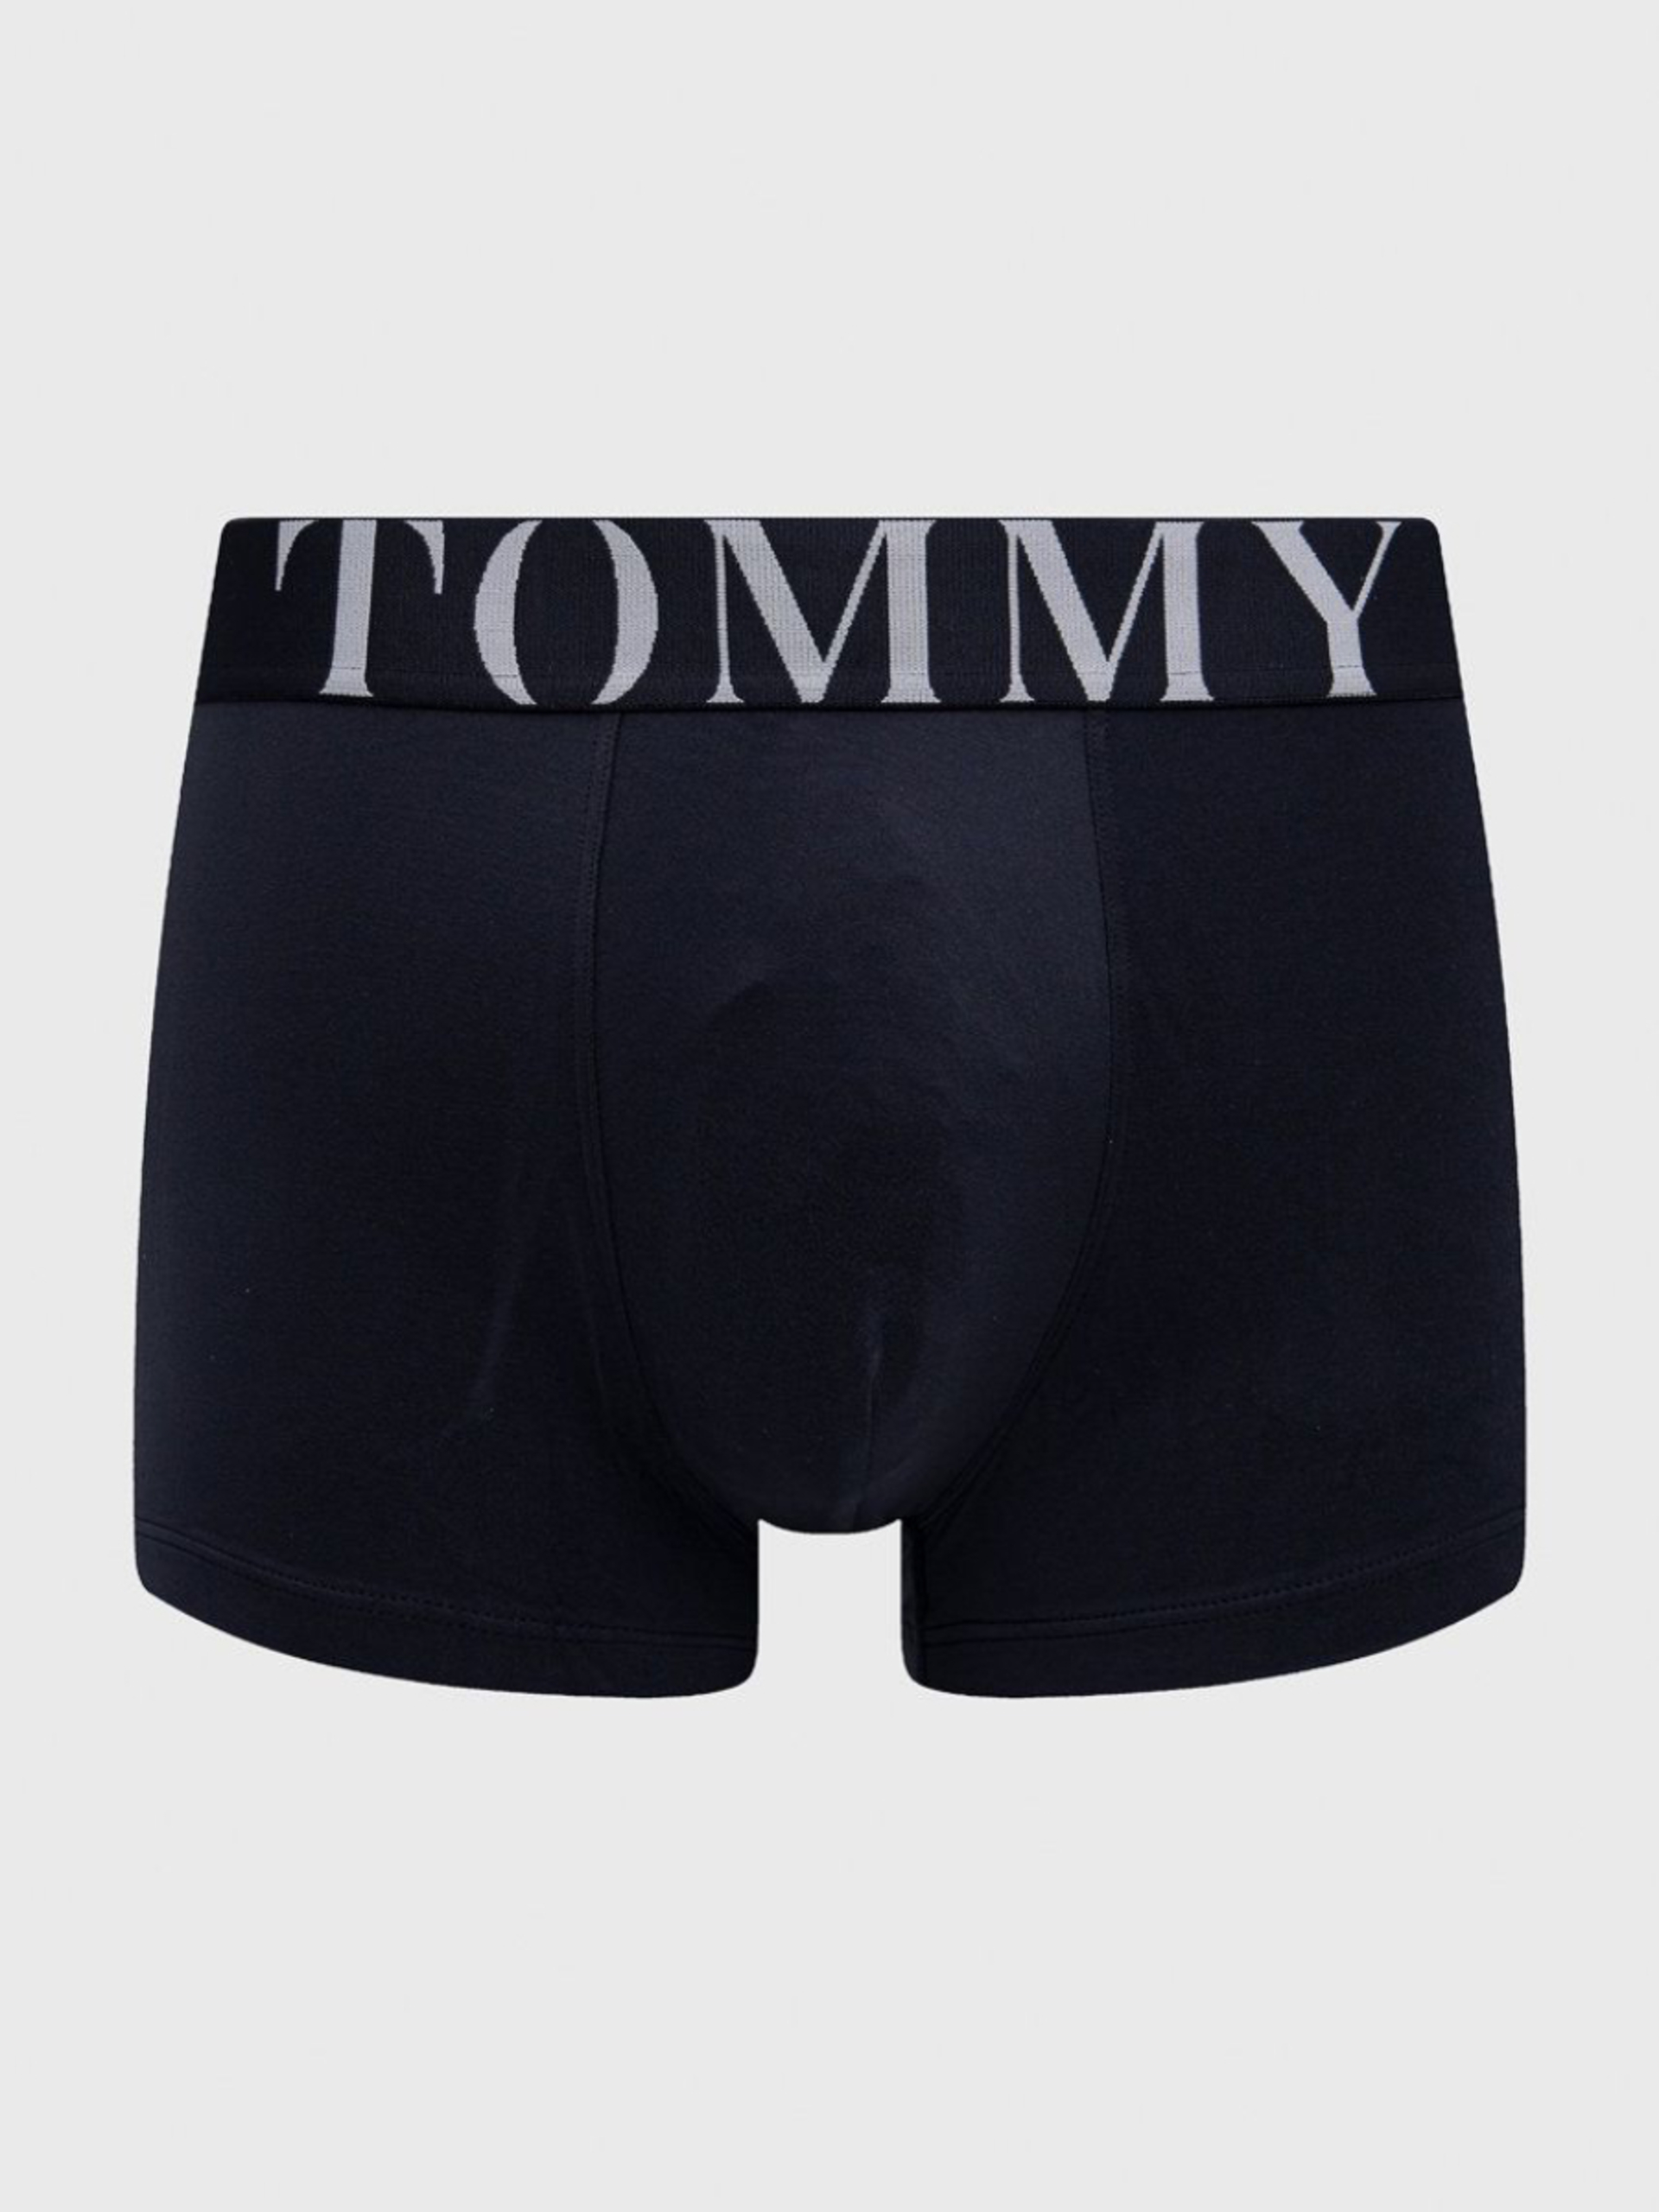 Tommy Hilfiger pánské tmavěmodré boxerky - XL (DW5)